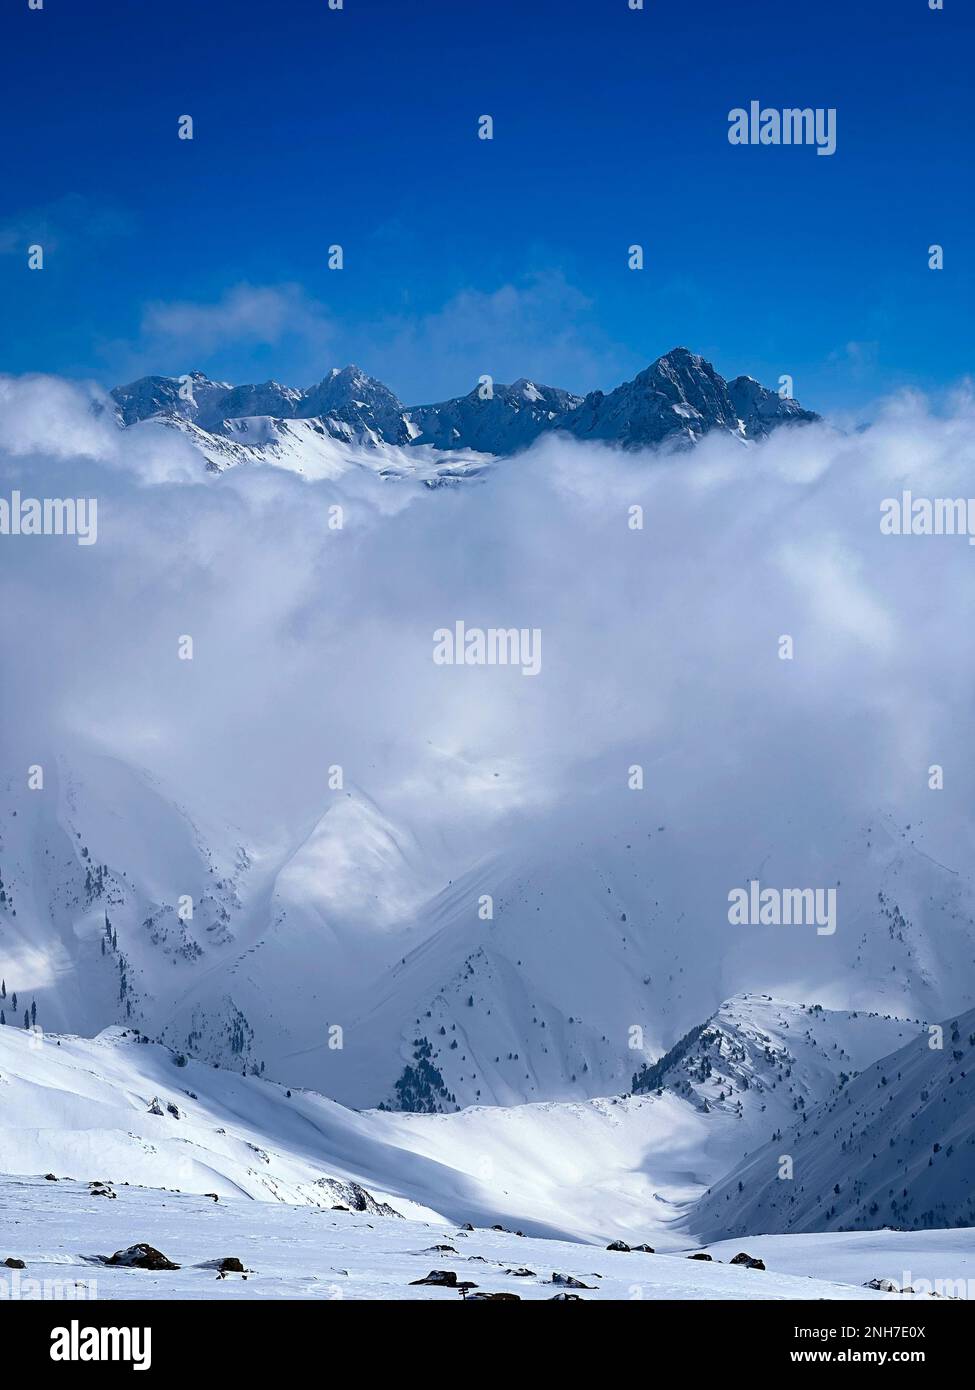 La neige couvrait les sommets de l'Himalaya. Les glaciers sont source d'eau pour l'Inde, le bangladesh, le Népal et d'autres pays asiatiques. Montagnes enneigées. Banque D'Images